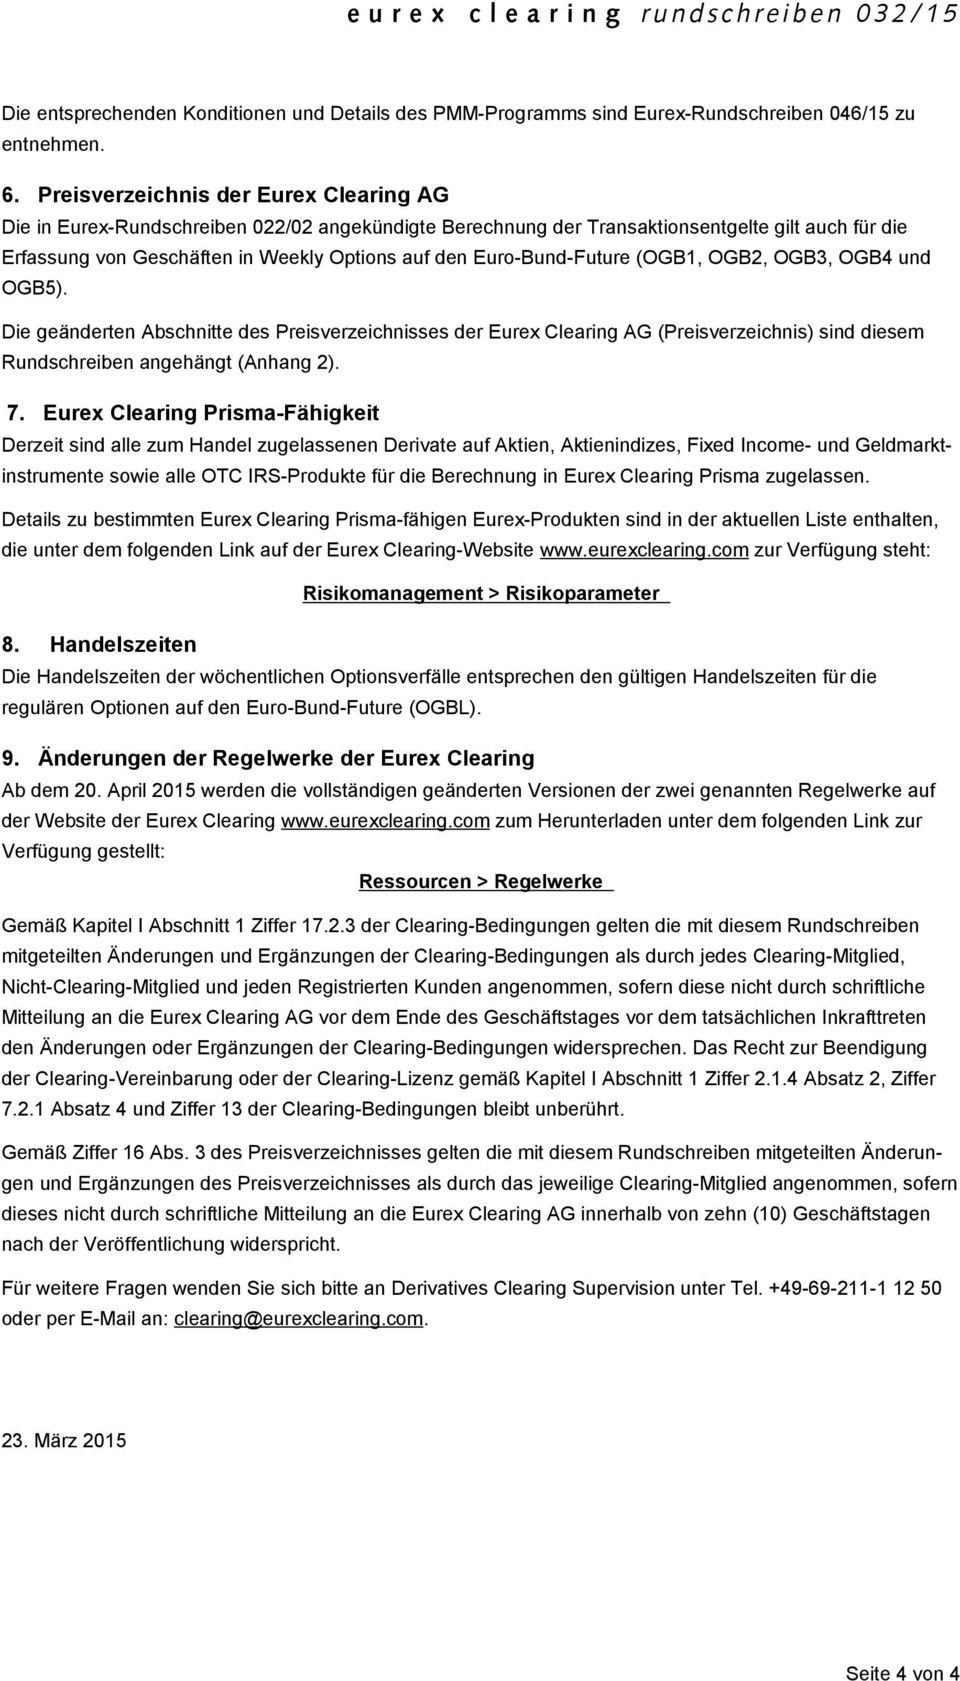 Euro-Bund-Future (OGB1, OGB2, OGB3, OGB4 und OGB5). Die geänderten Abschnitte des Preisverzeichnisses der Eurex Clearing AG (Preisverzeichnis) sind diesem Rundschreiben angehängt (Anhang 2). 7.